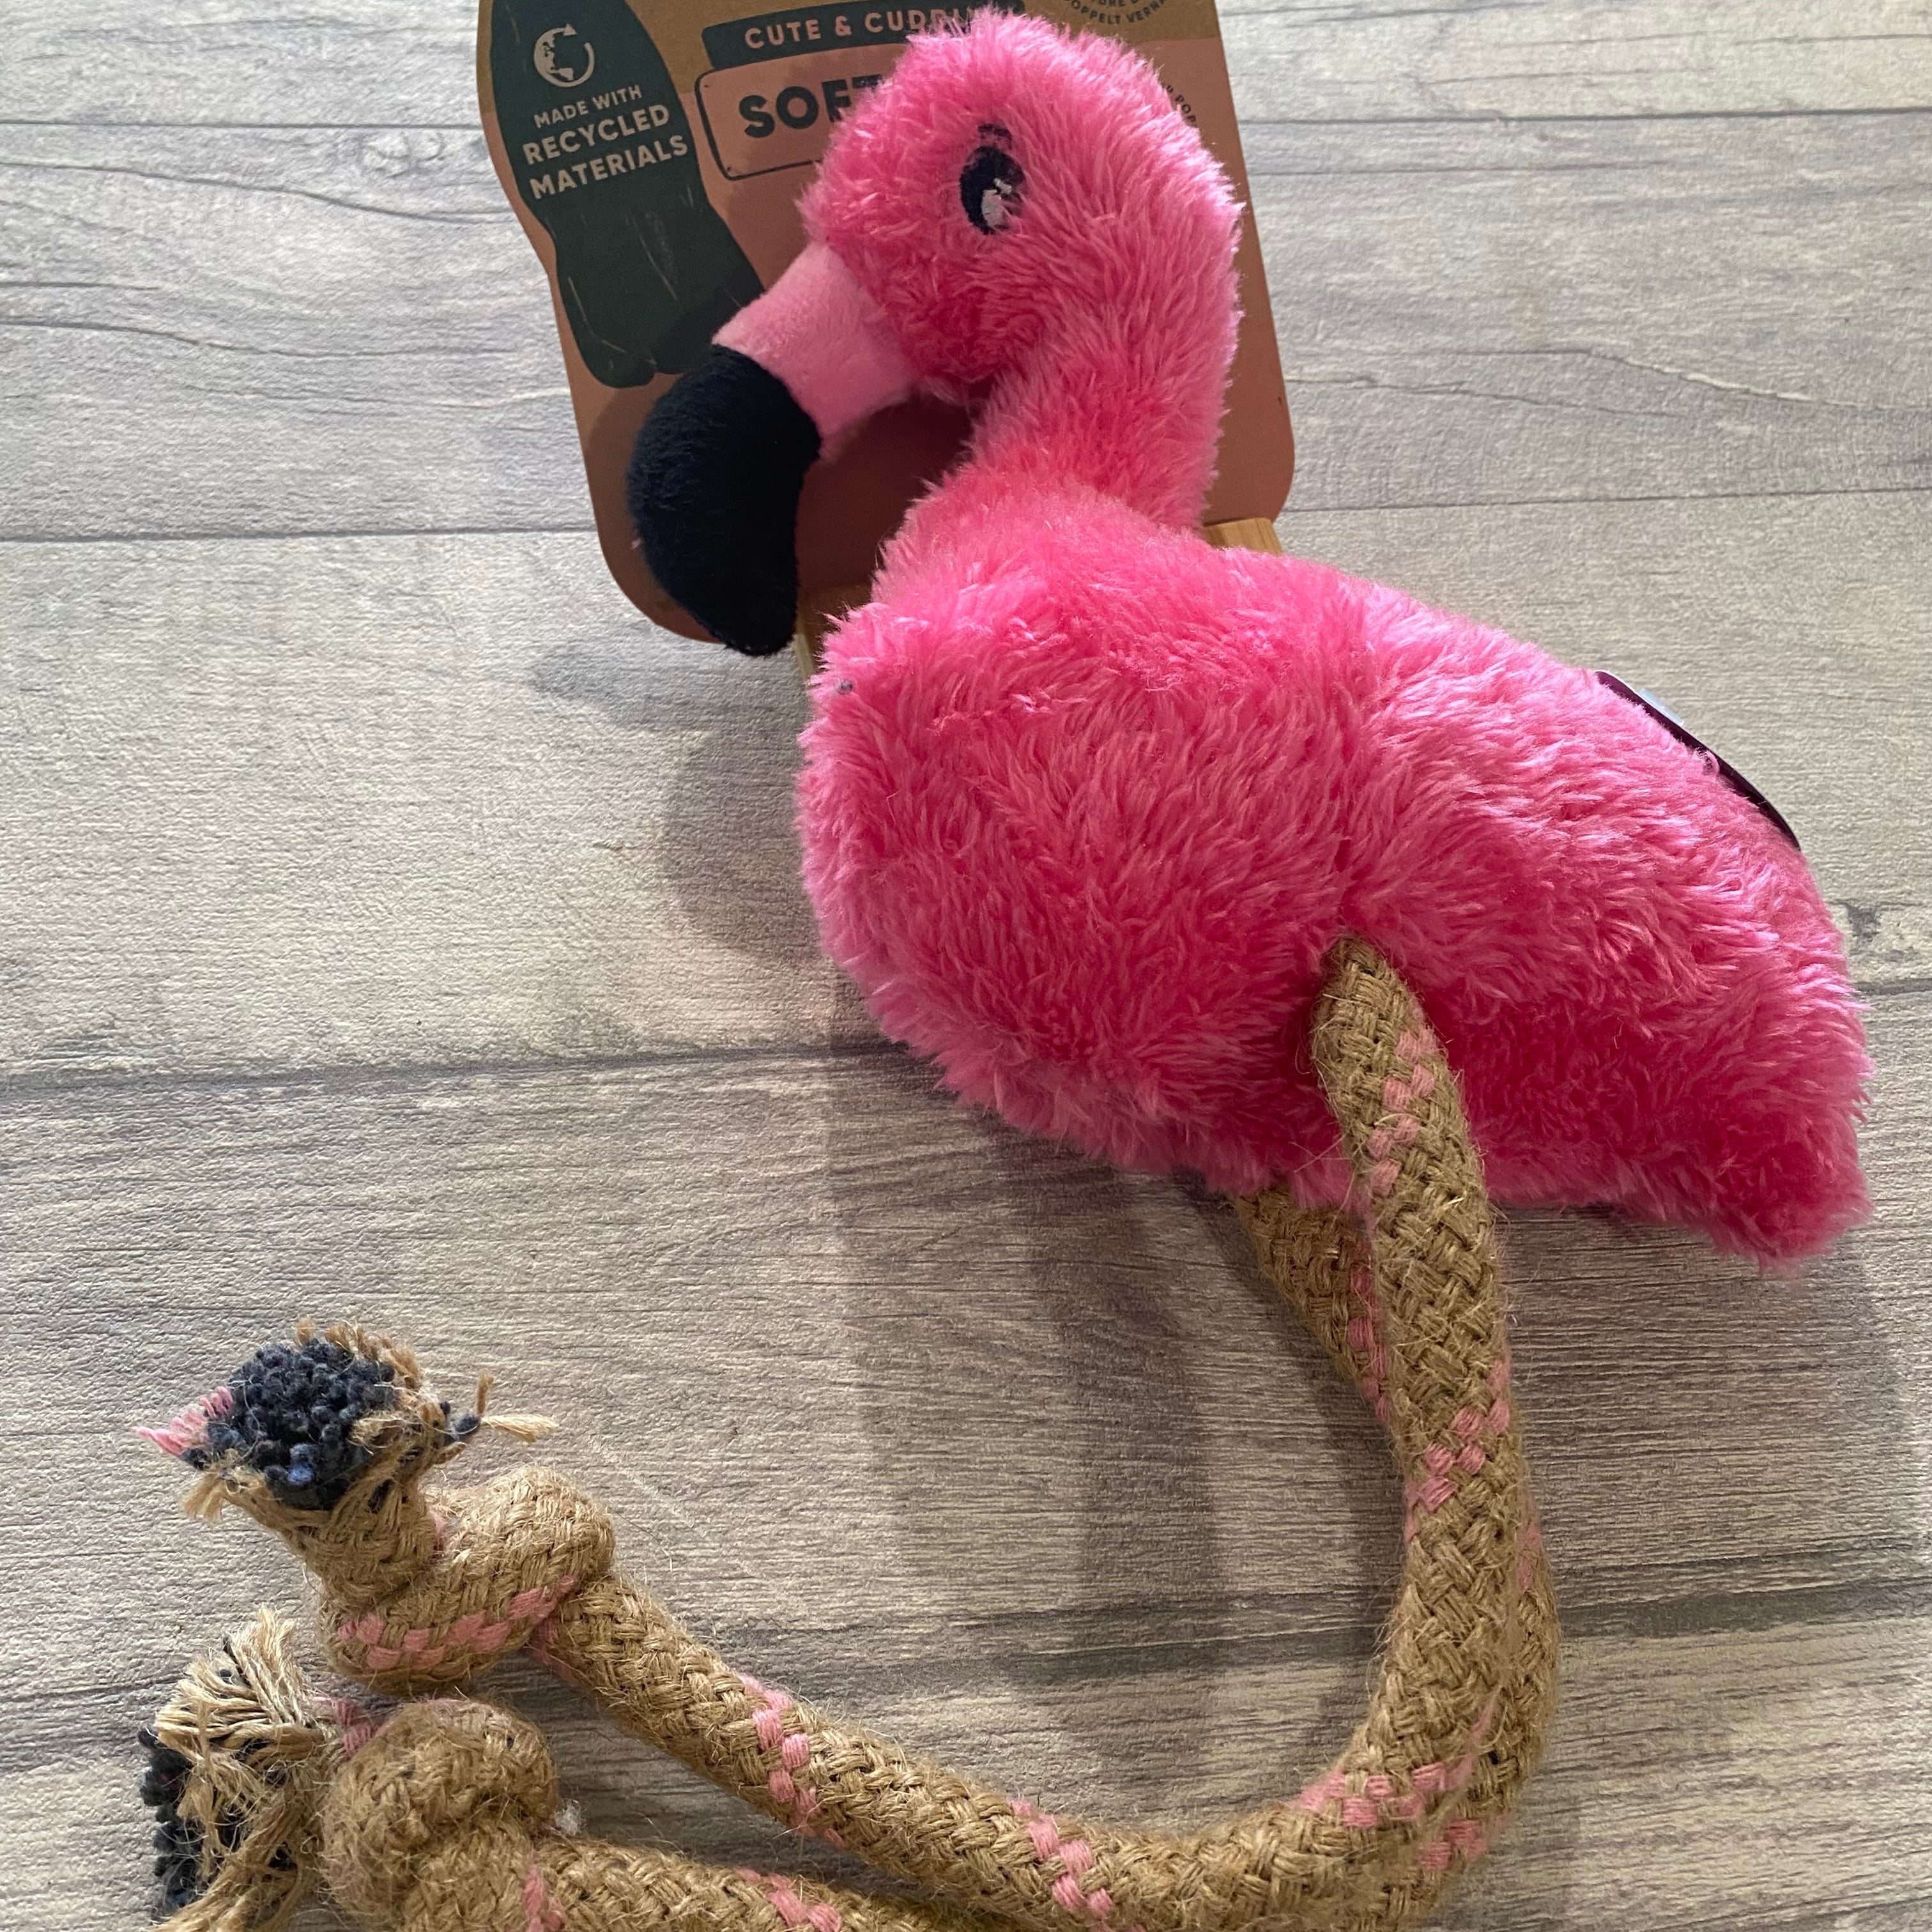 Beco 'Cute & Cuddly' Fernando the Flamingo dog toy